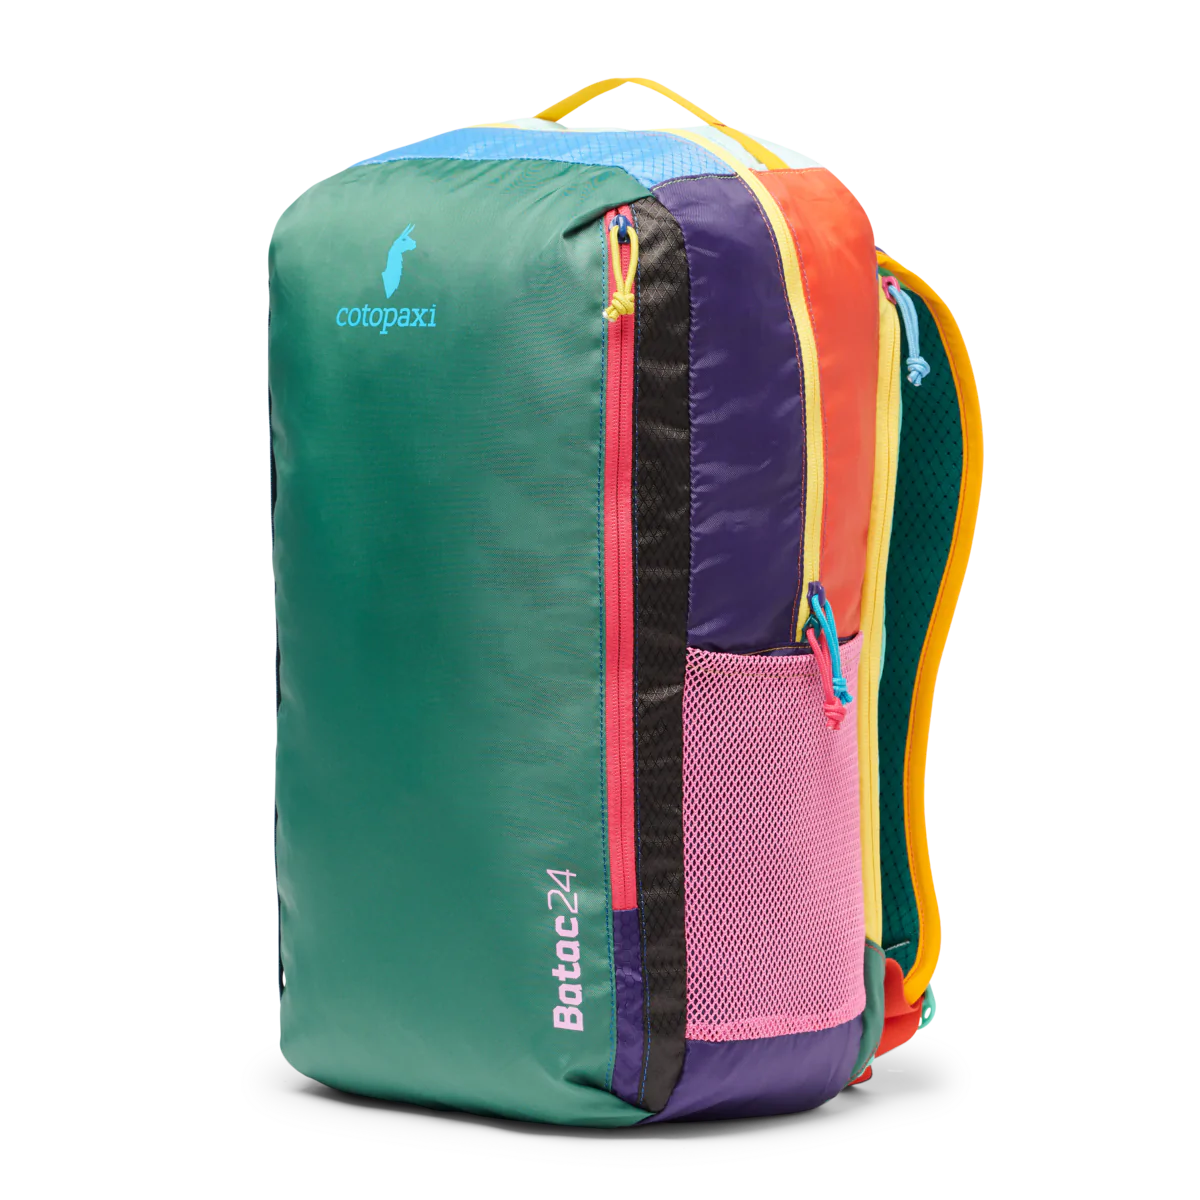 Batac 24L Backpack